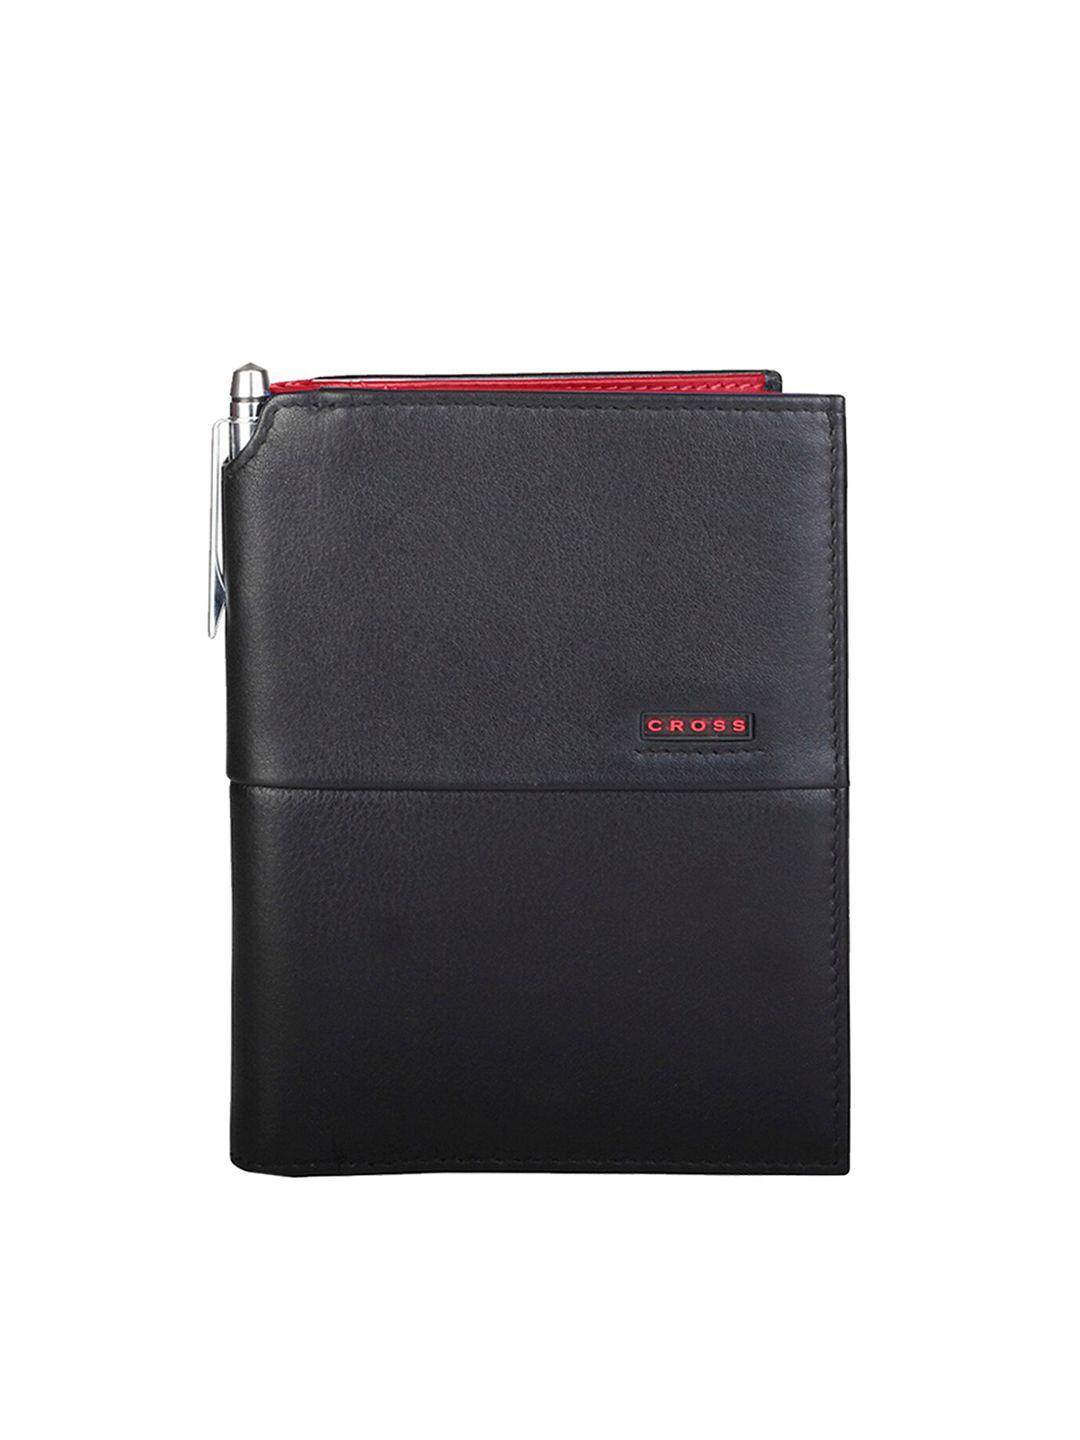 cross men black & red solid leather passport wallet